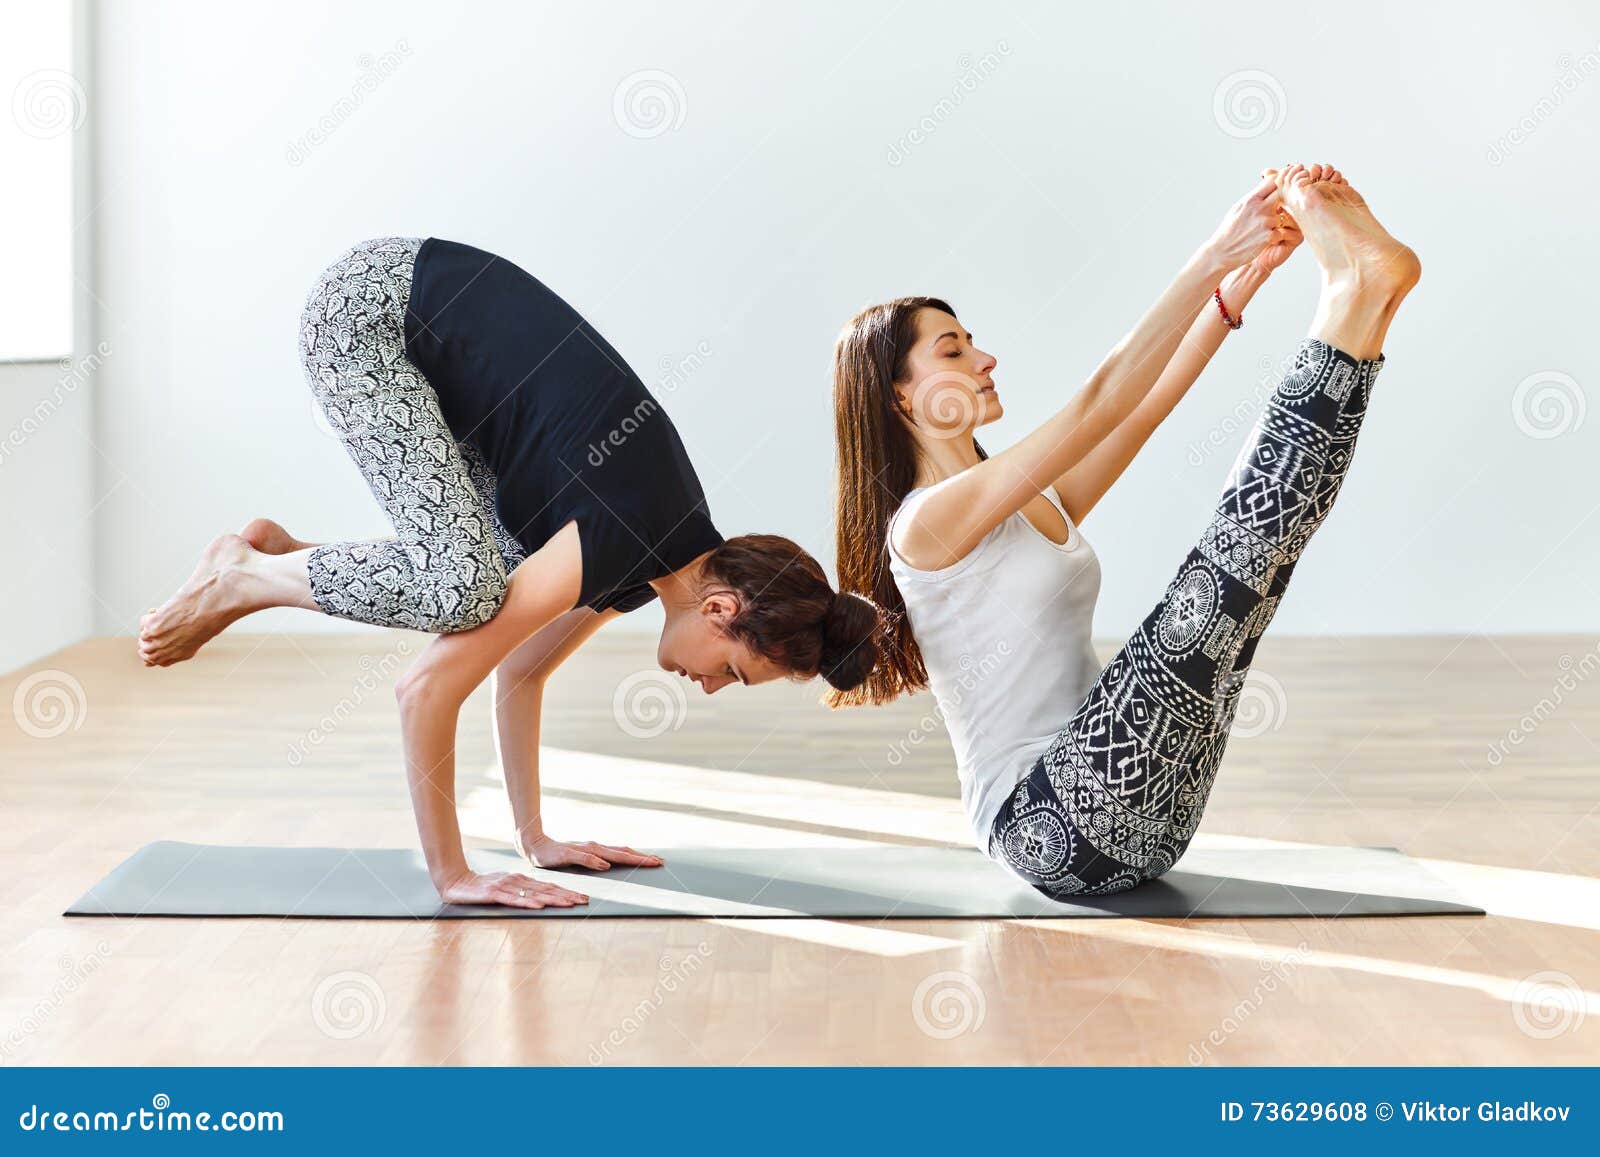 Premium Photo | Young couple practicing acro yoga on mat in studio together  acroyoga couple yoga partner yoga